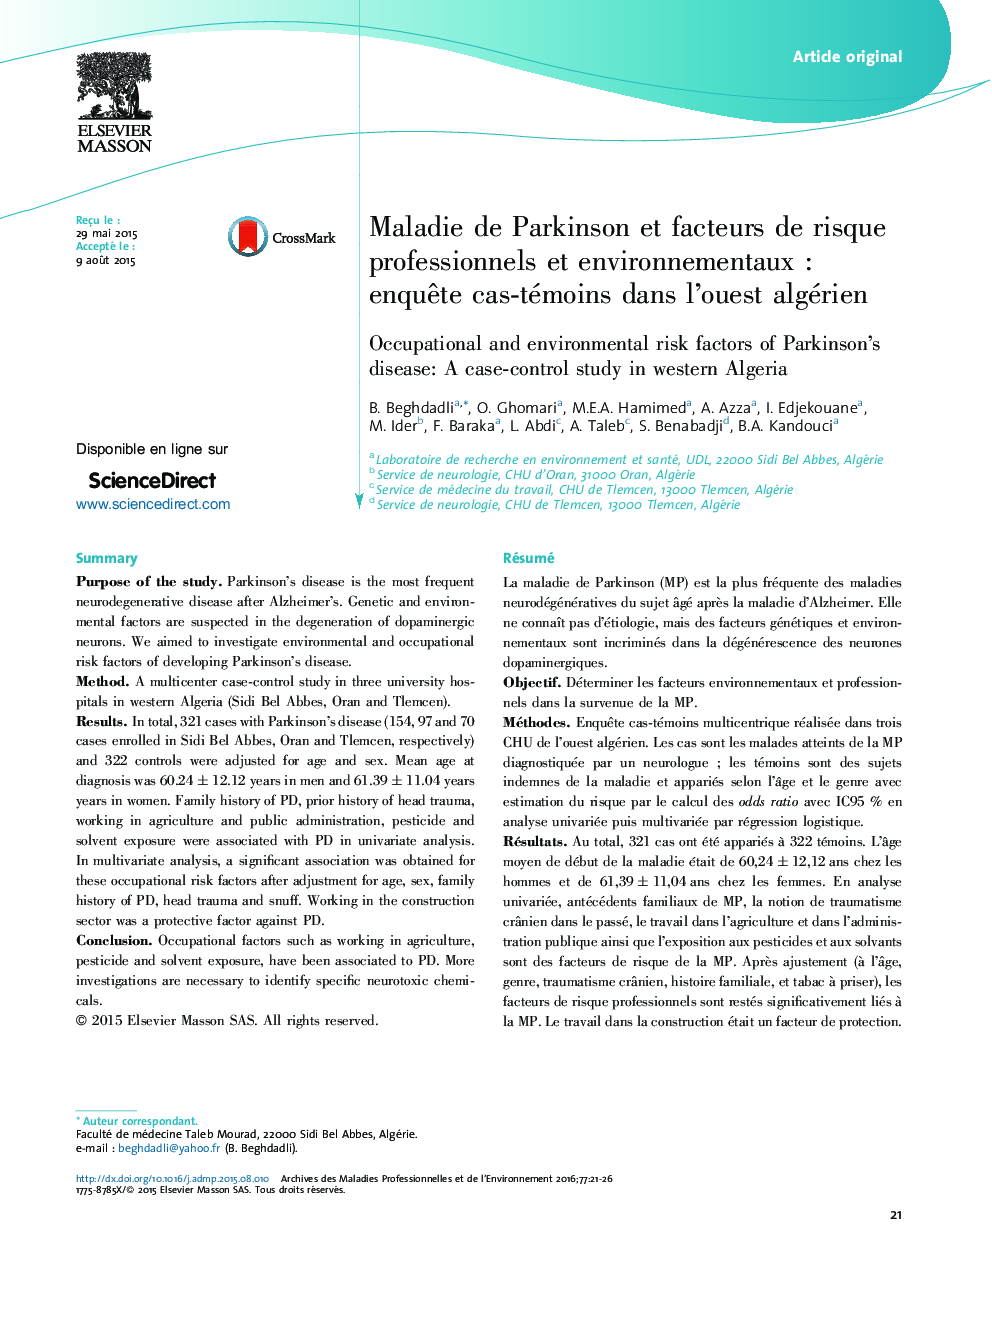 Maladie de Parkinson et facteurs de risque professionnels et environnementauxÂ : enquÃªte cas-témoins dans l'ouest algérien